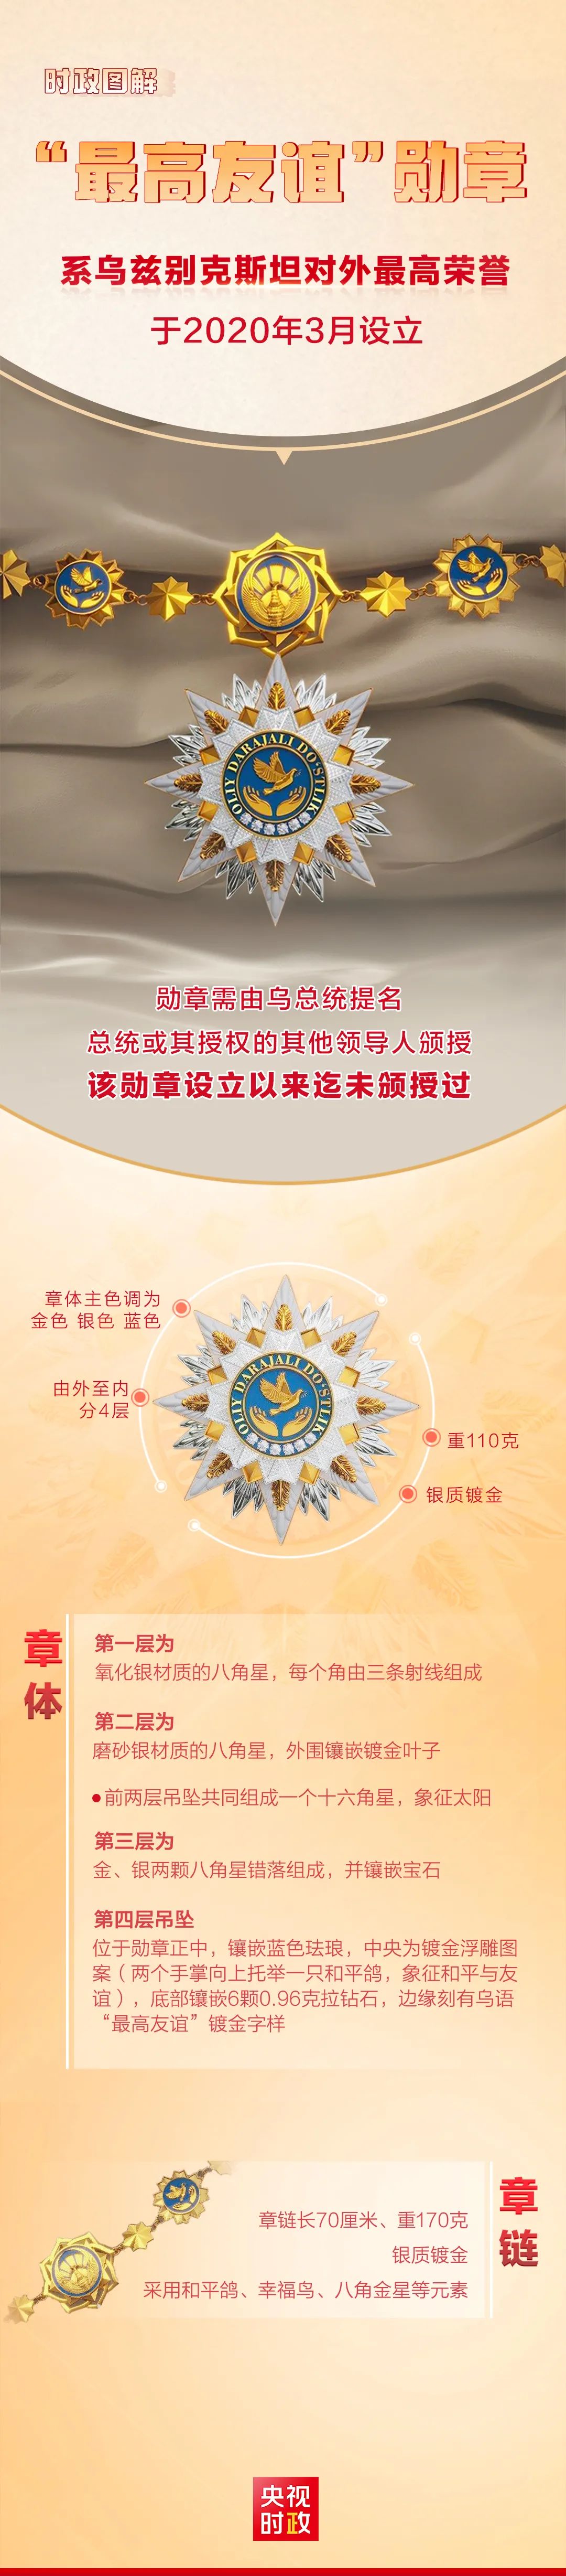 视频丨习近平接受乌兹别克斯坦总统授予“最高友谊”勋章